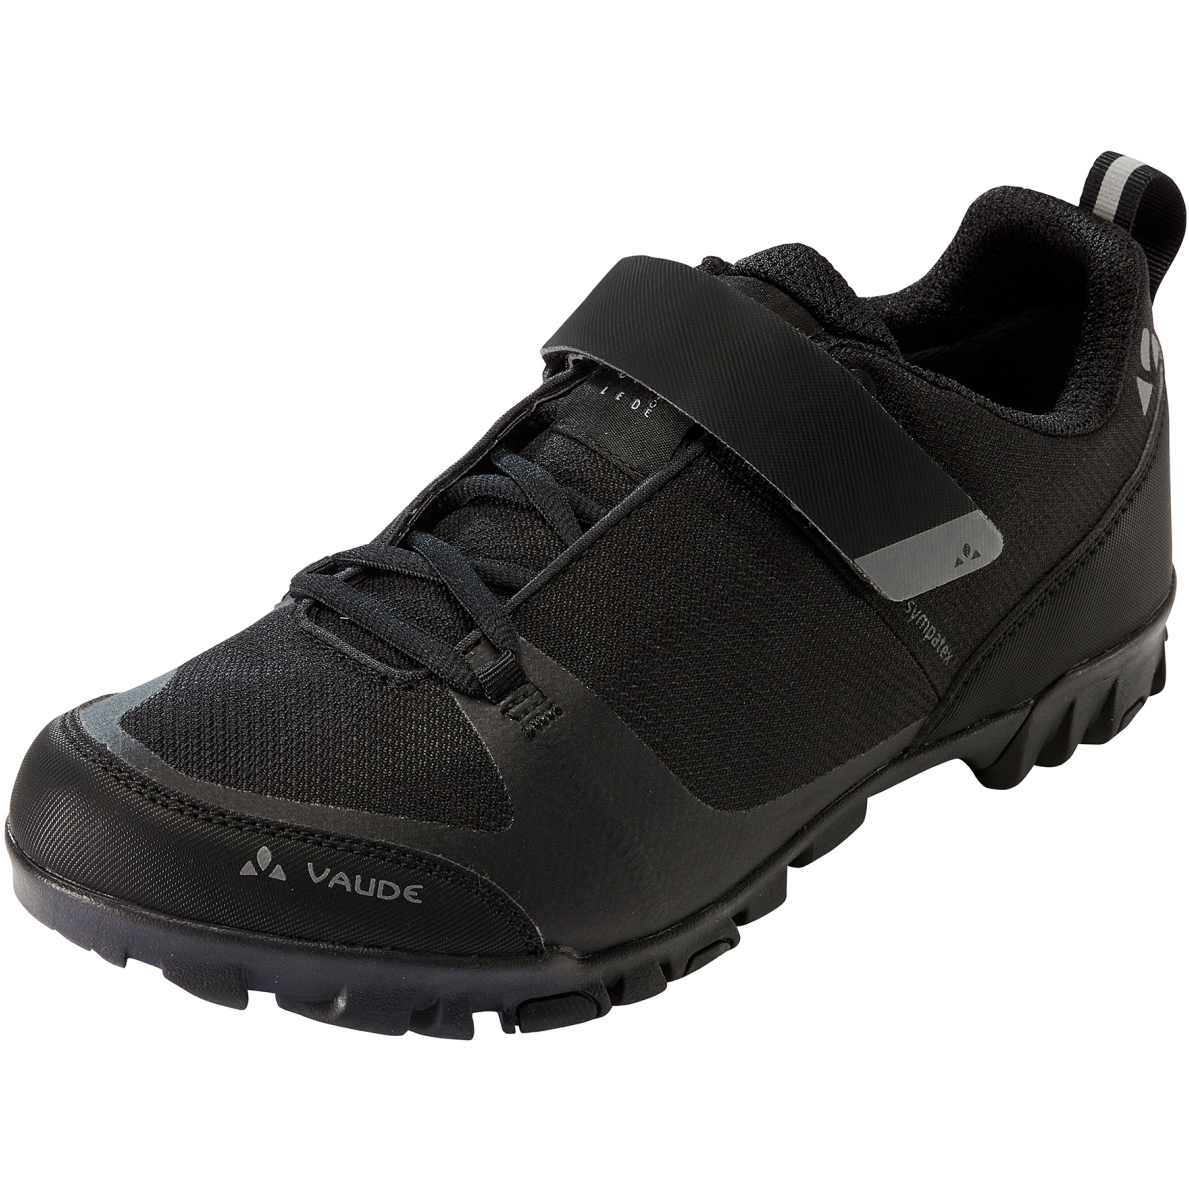 Productfoto van Vaude TVL Pavei II STX Fietsschoenen - zwart